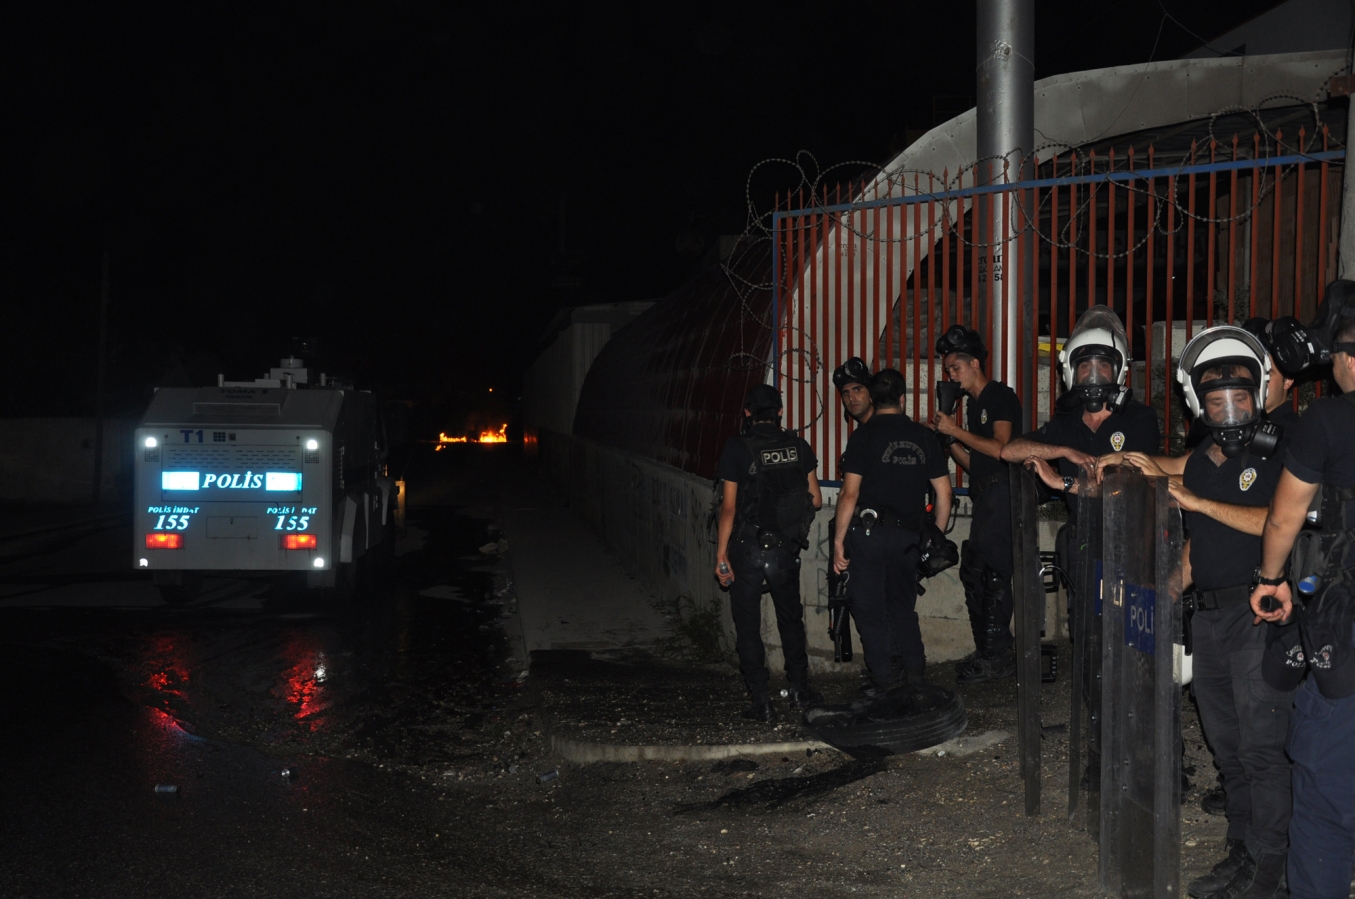 Tarsus’ta Molotof attığı iddia edilen 1 kişi tutuklandı